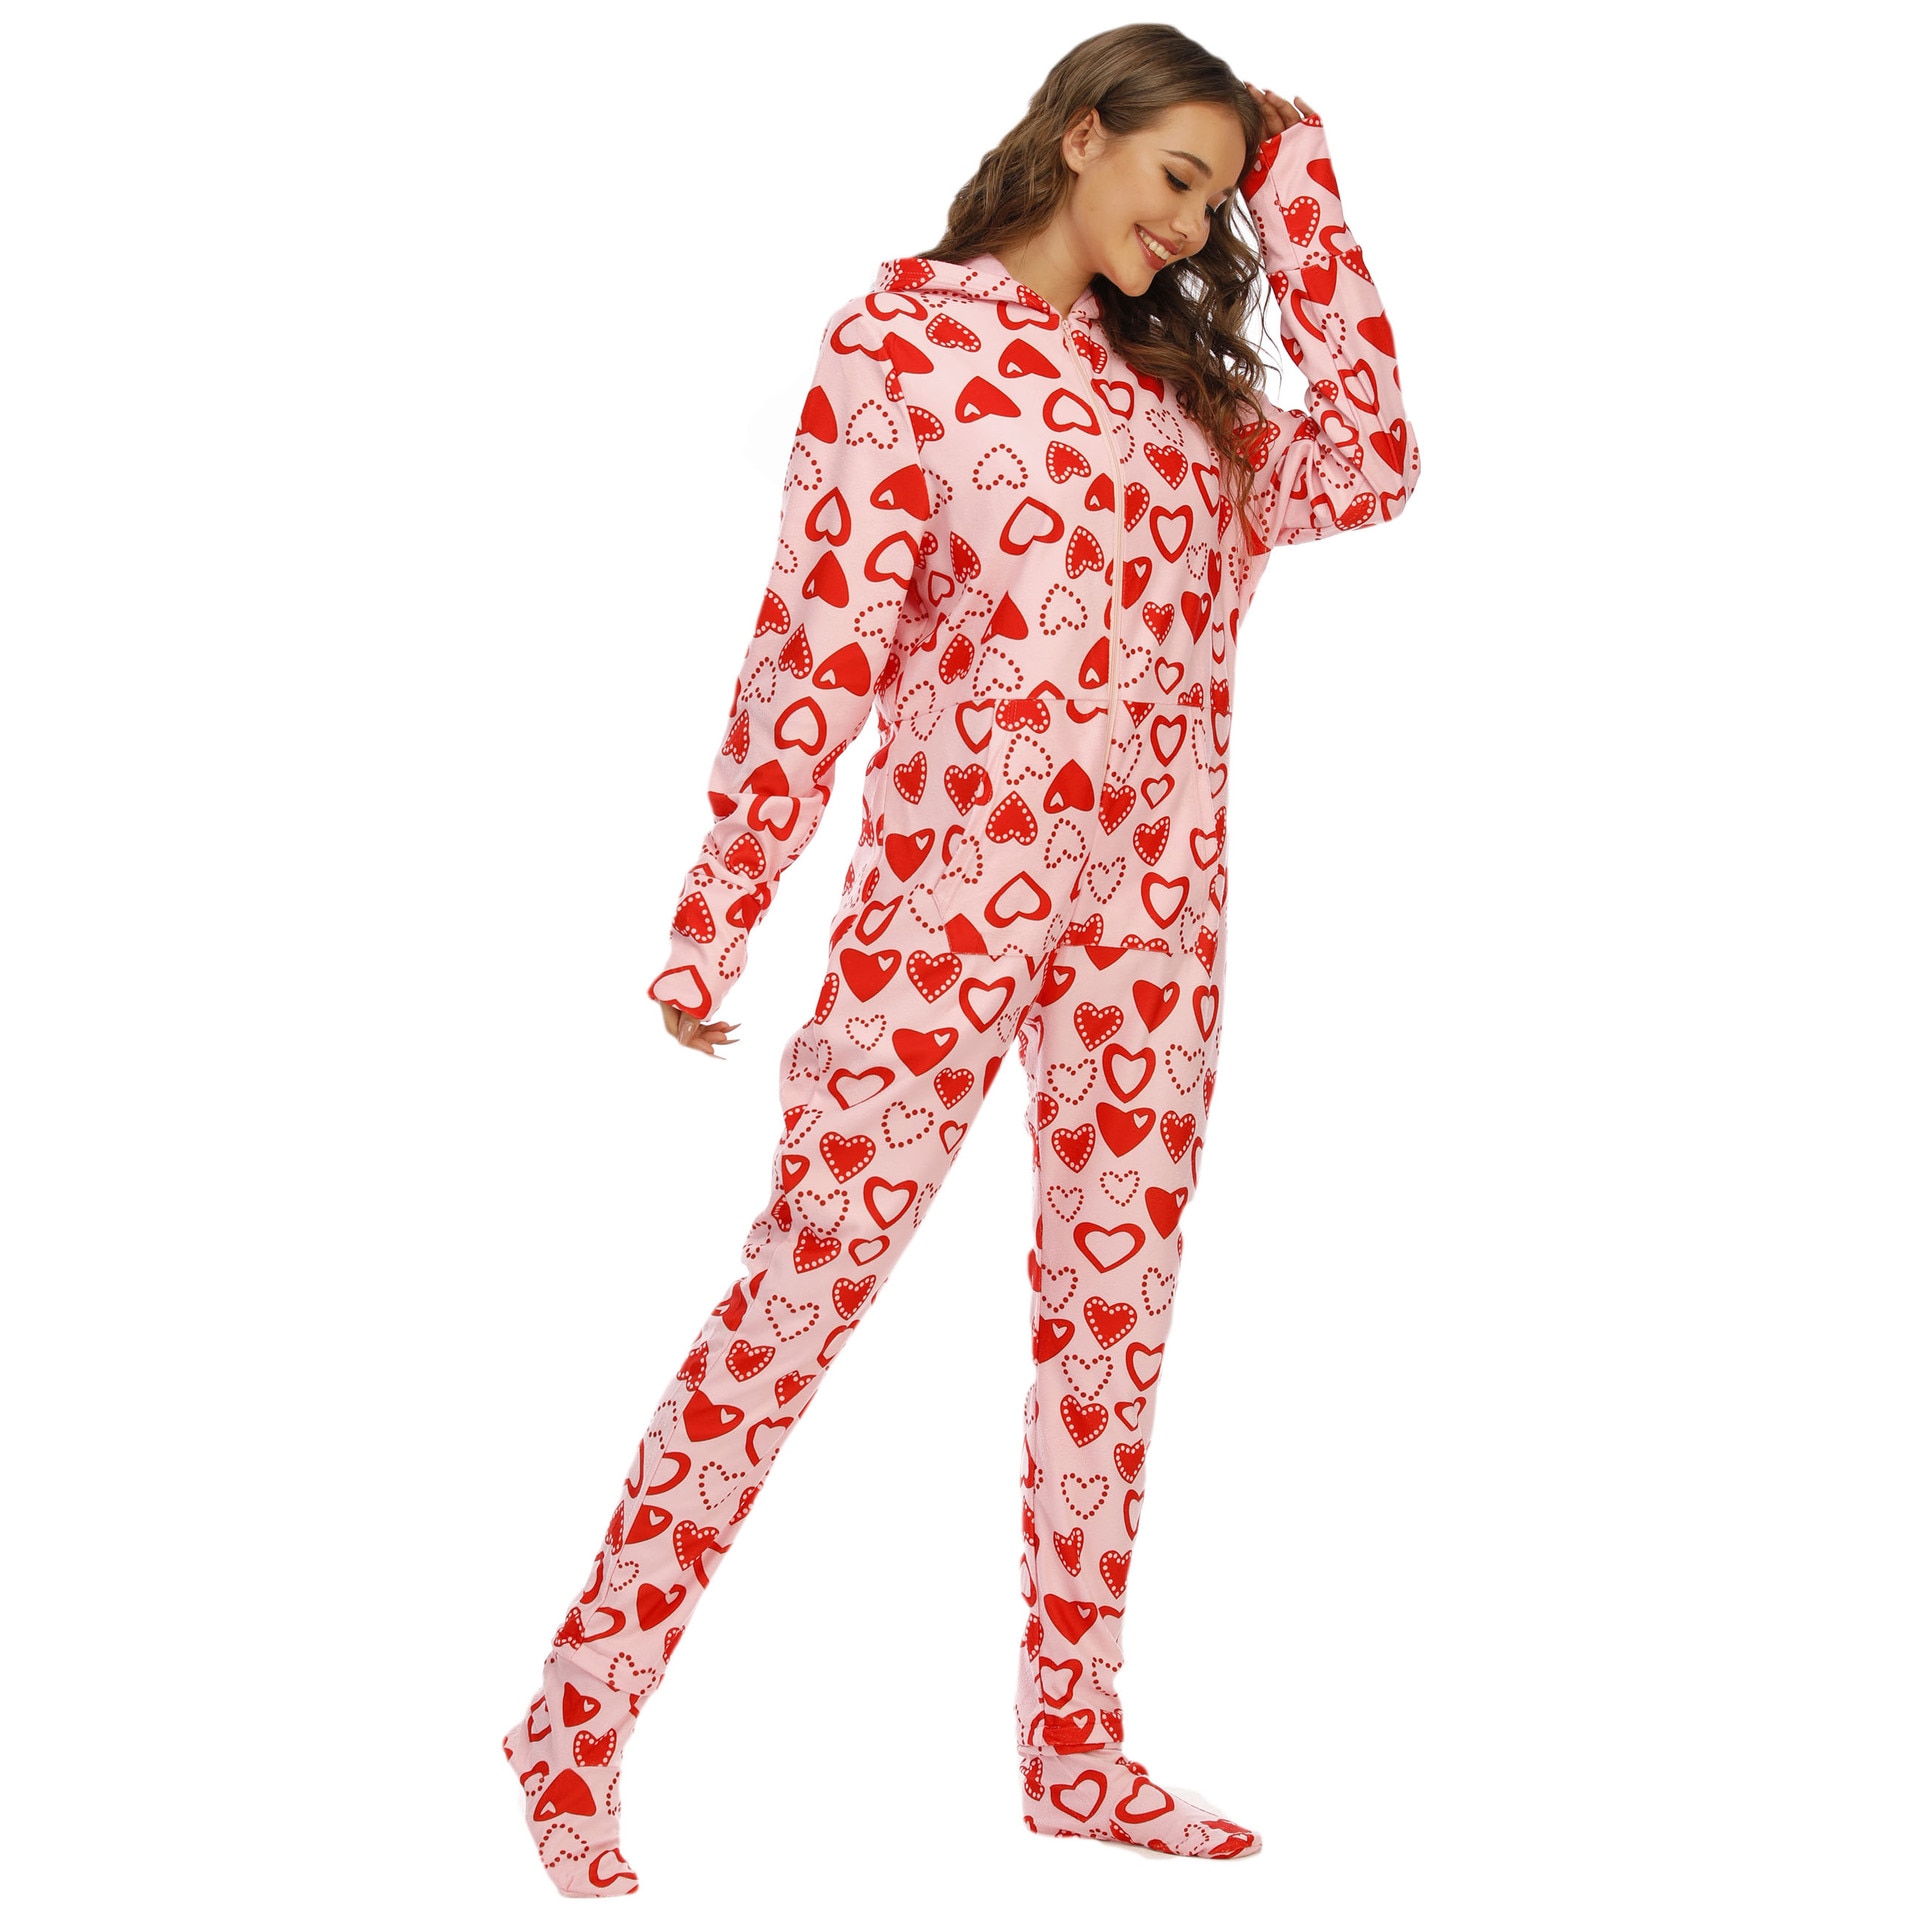 Women Pajamas Polar Fleece Jumpsuit Zipper Hooded Onesie Sleepwear Love Print Nightgown Pink Red With Foot Cover Rompers Pyjamas